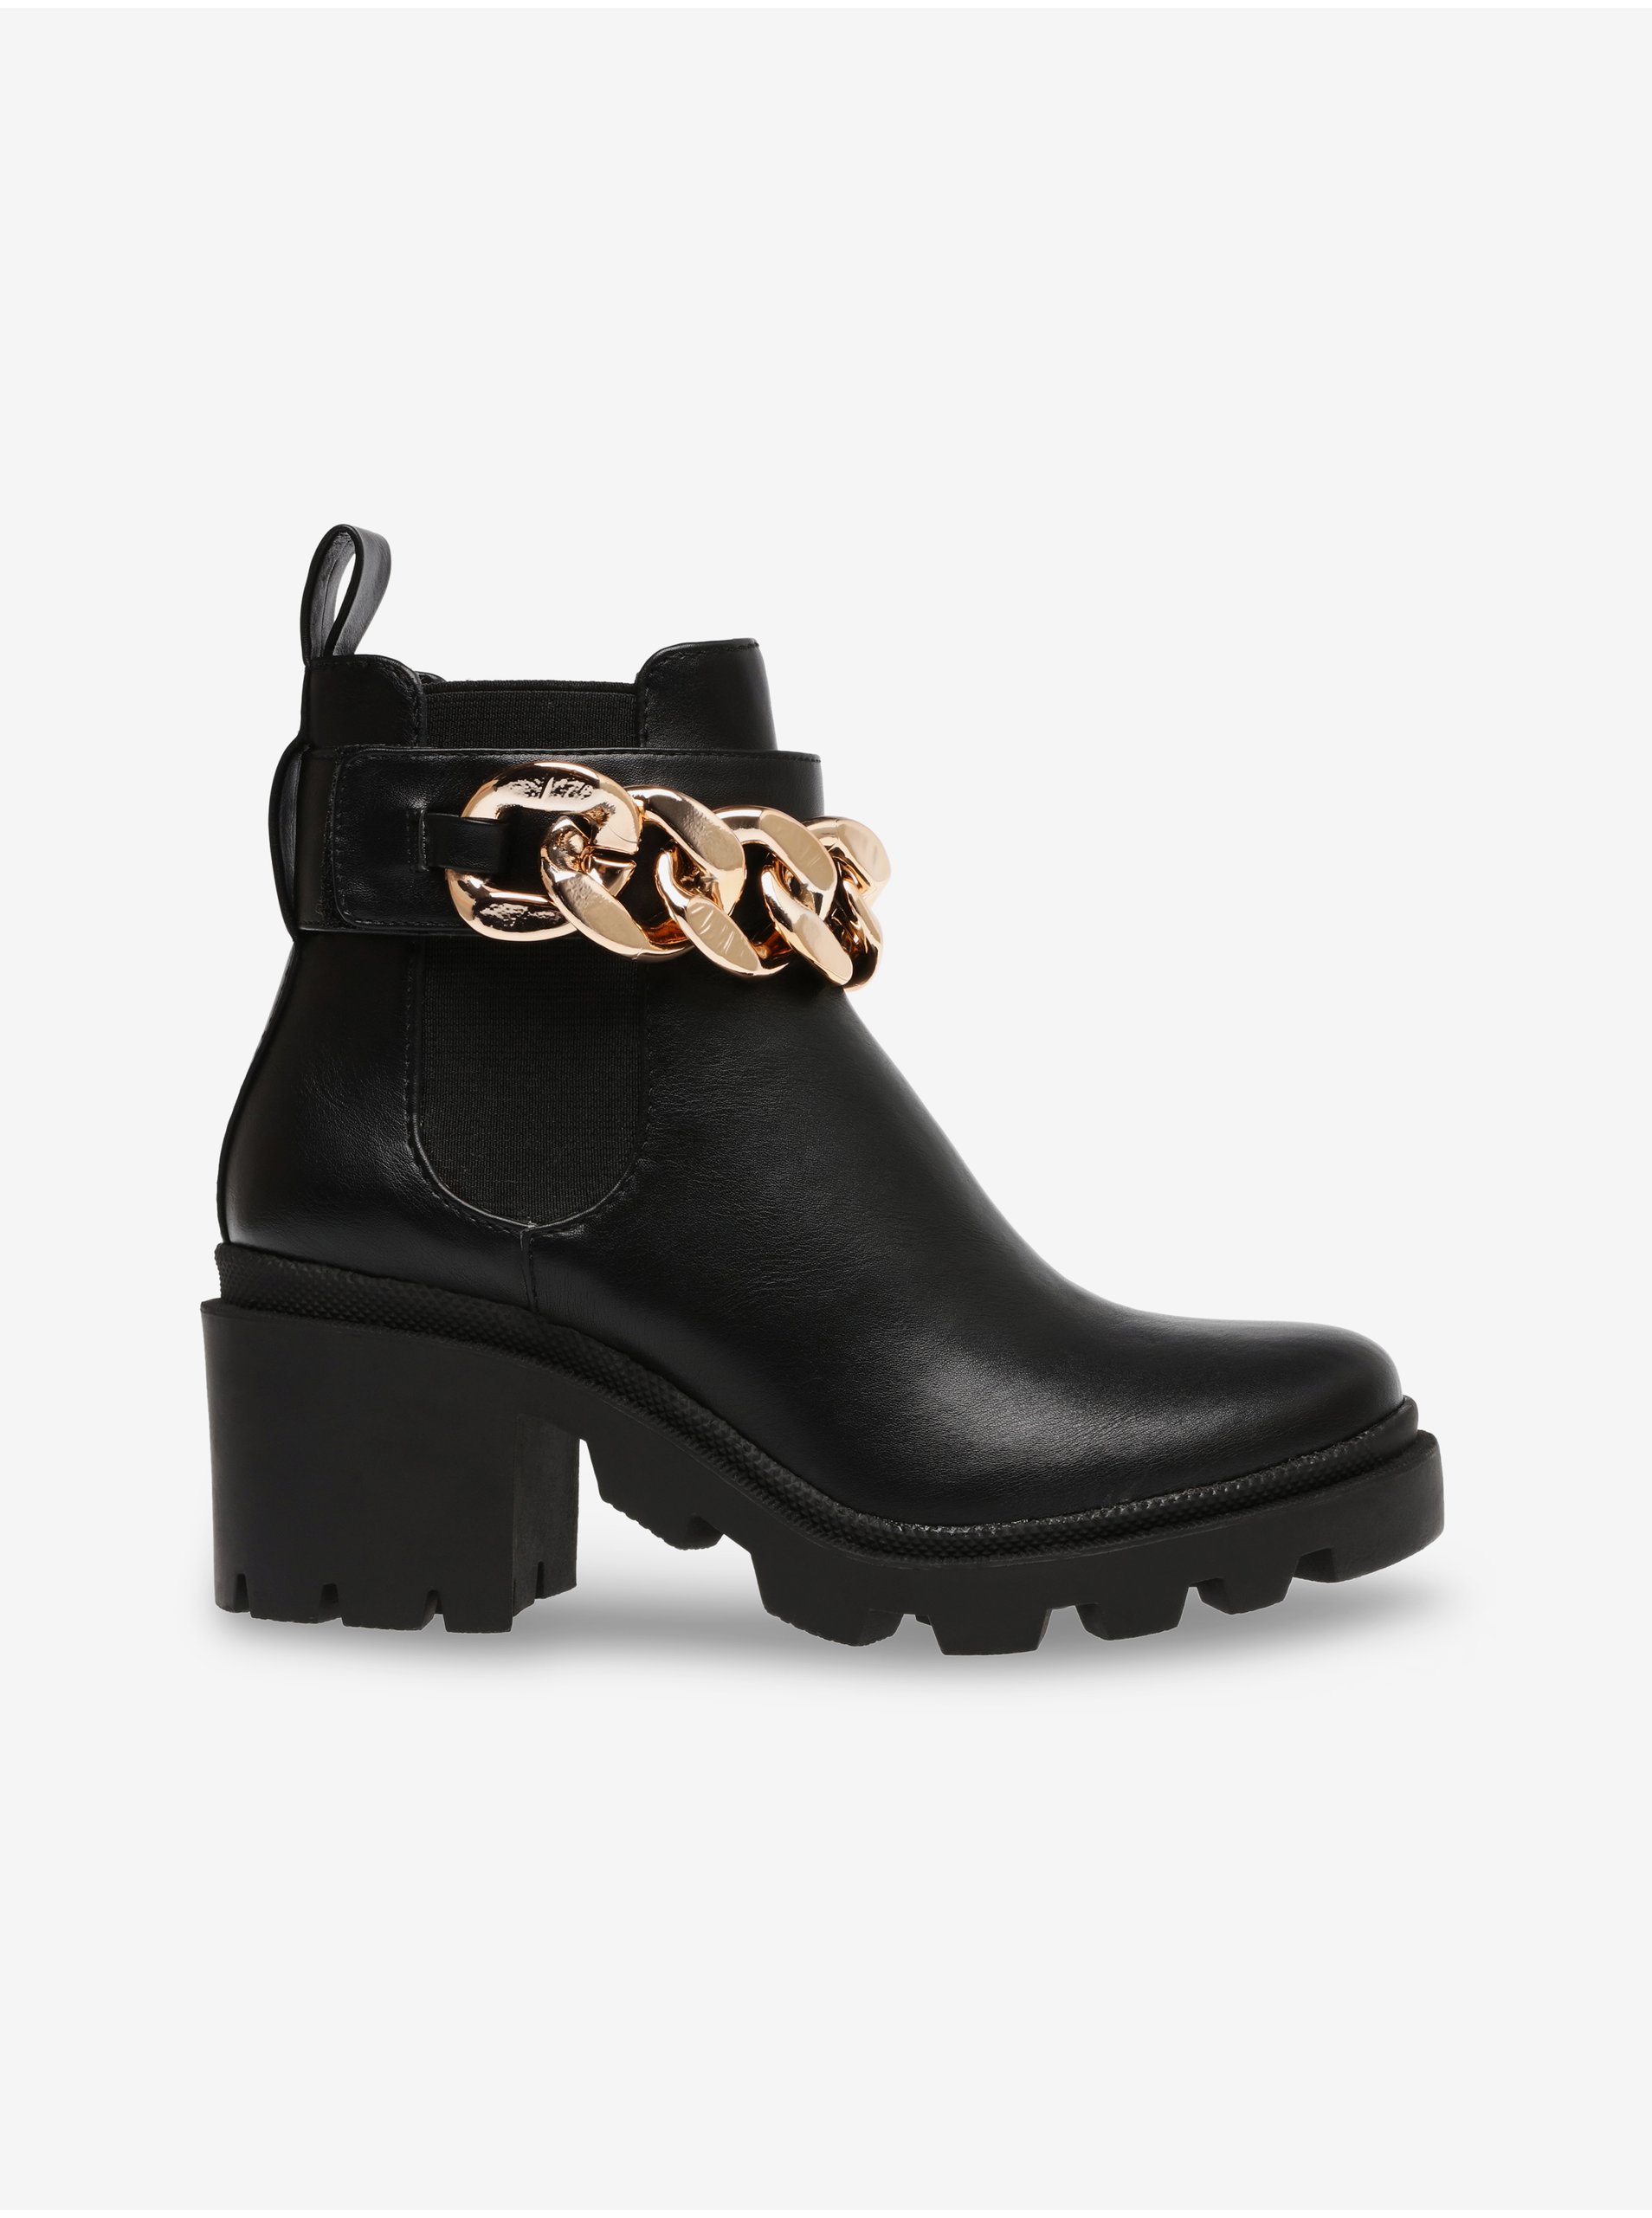 E-shop Černé dámské kotníkové boty na podpatku Steve Madden Amulet